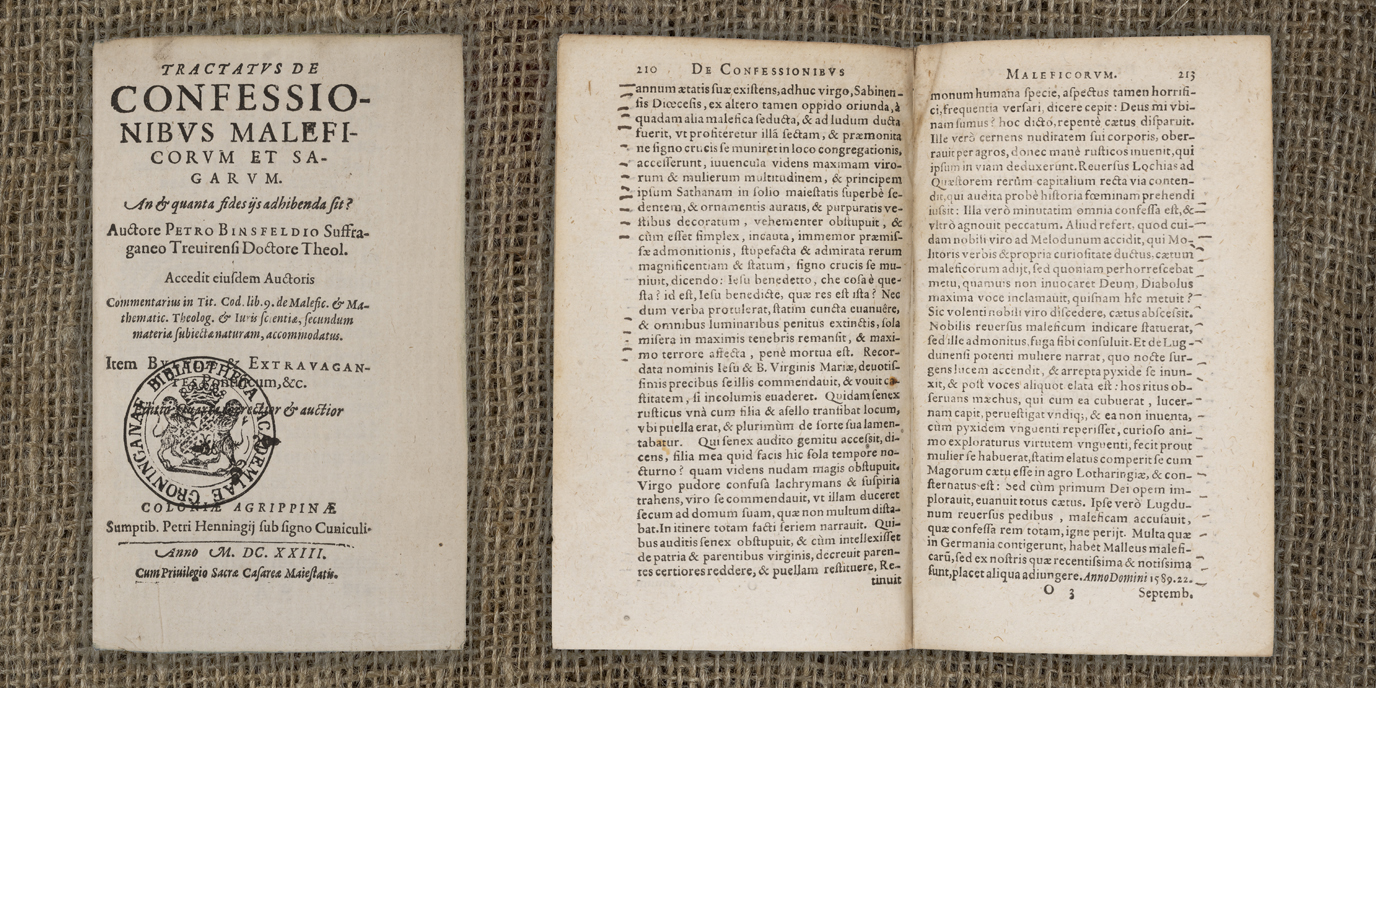 In dit exemplaar uit 1623 van Peter Binsfeld’s 'Tractatus de confessionibus maleficorum et sagarum' (1589) zien we door het hele boek kleine streepjes in de kantlijn. Deze streepjes kunnen wijzen op het belang van sommige passages in dit traktaat over de ontmaskering en vervolging van heksen en tovenaars.In this 1623 copy of Peter Binsfeld’s 'Tractatus de confessionibus maleficorum et sagarum' (1589), we see small dashes in the margins throughout the book. These dashes could emphasize the importance of certain paragraphs in this treatise on the exposure and prosecution of witches and wizards.